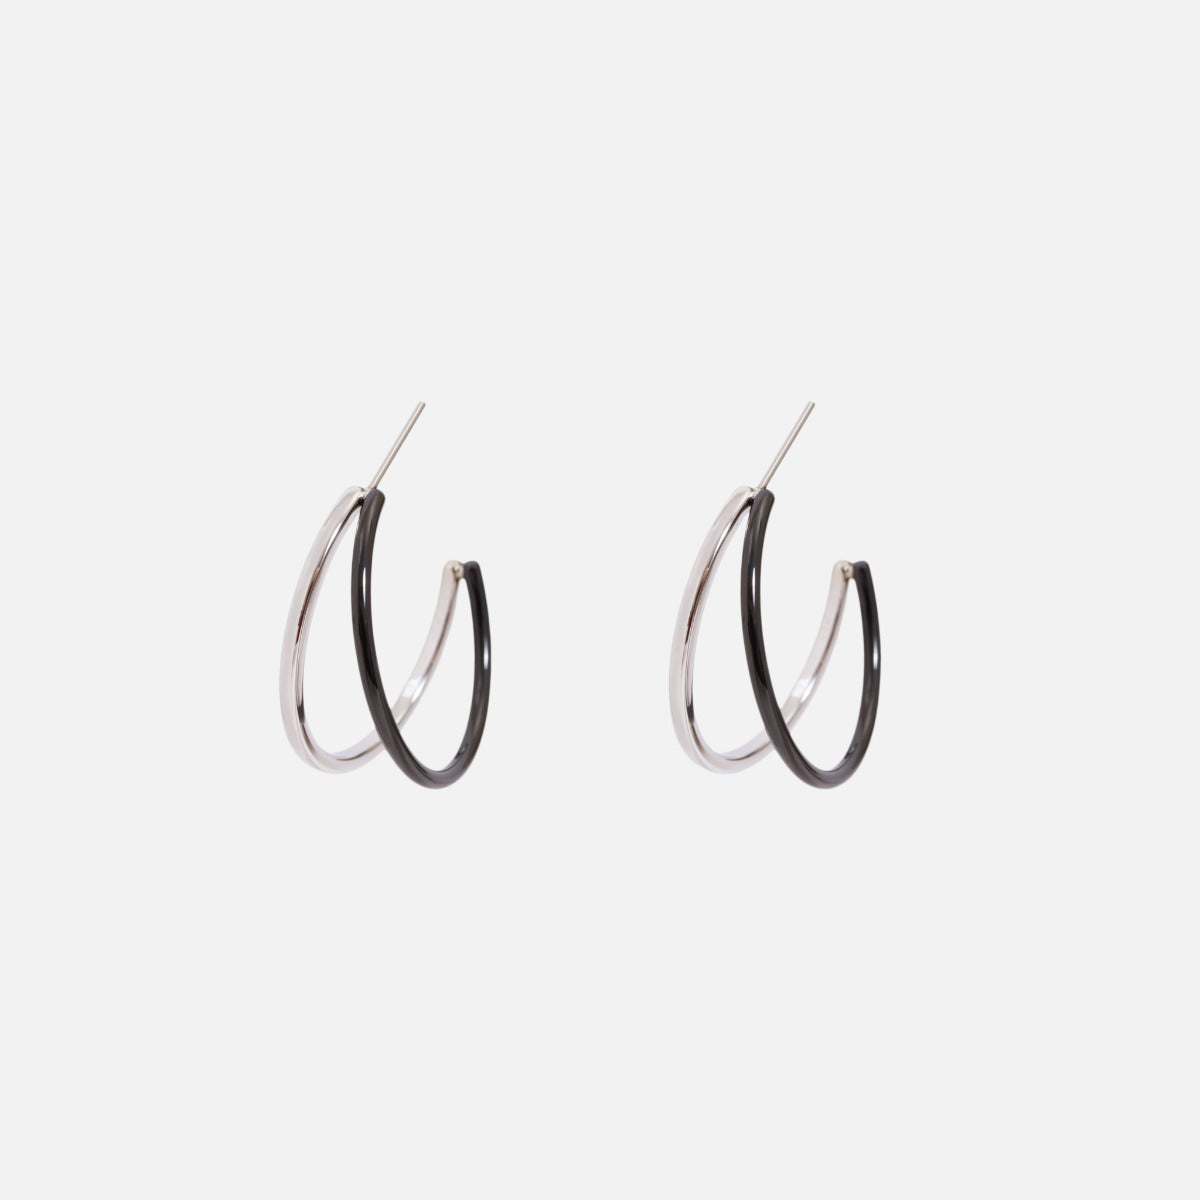 Stainless steel two tones double hoop earrings   